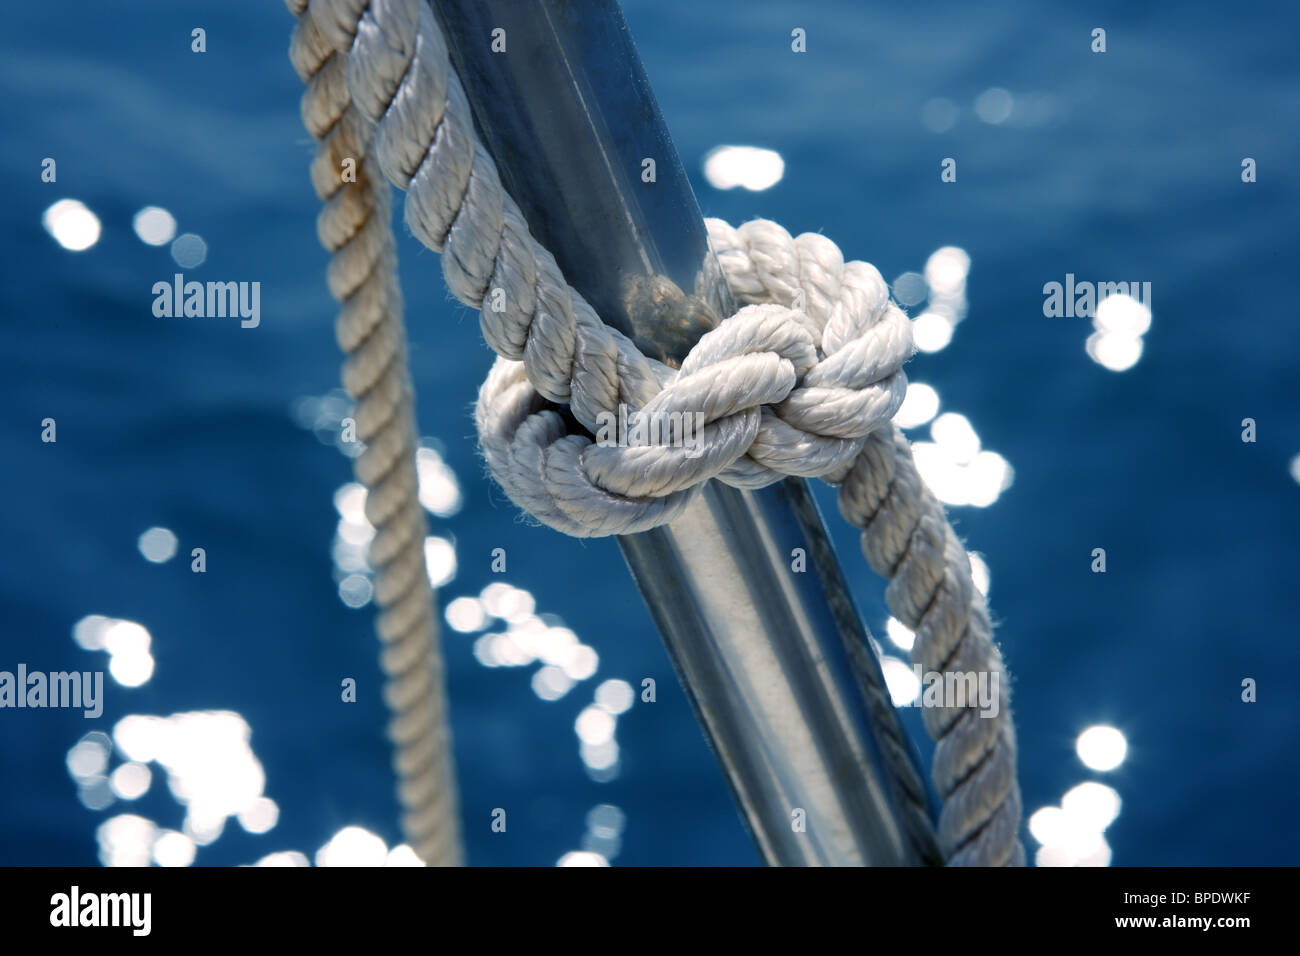 Détail noeud marin sur bateau en acier inoxydable forgé Bannister Banque D'Images